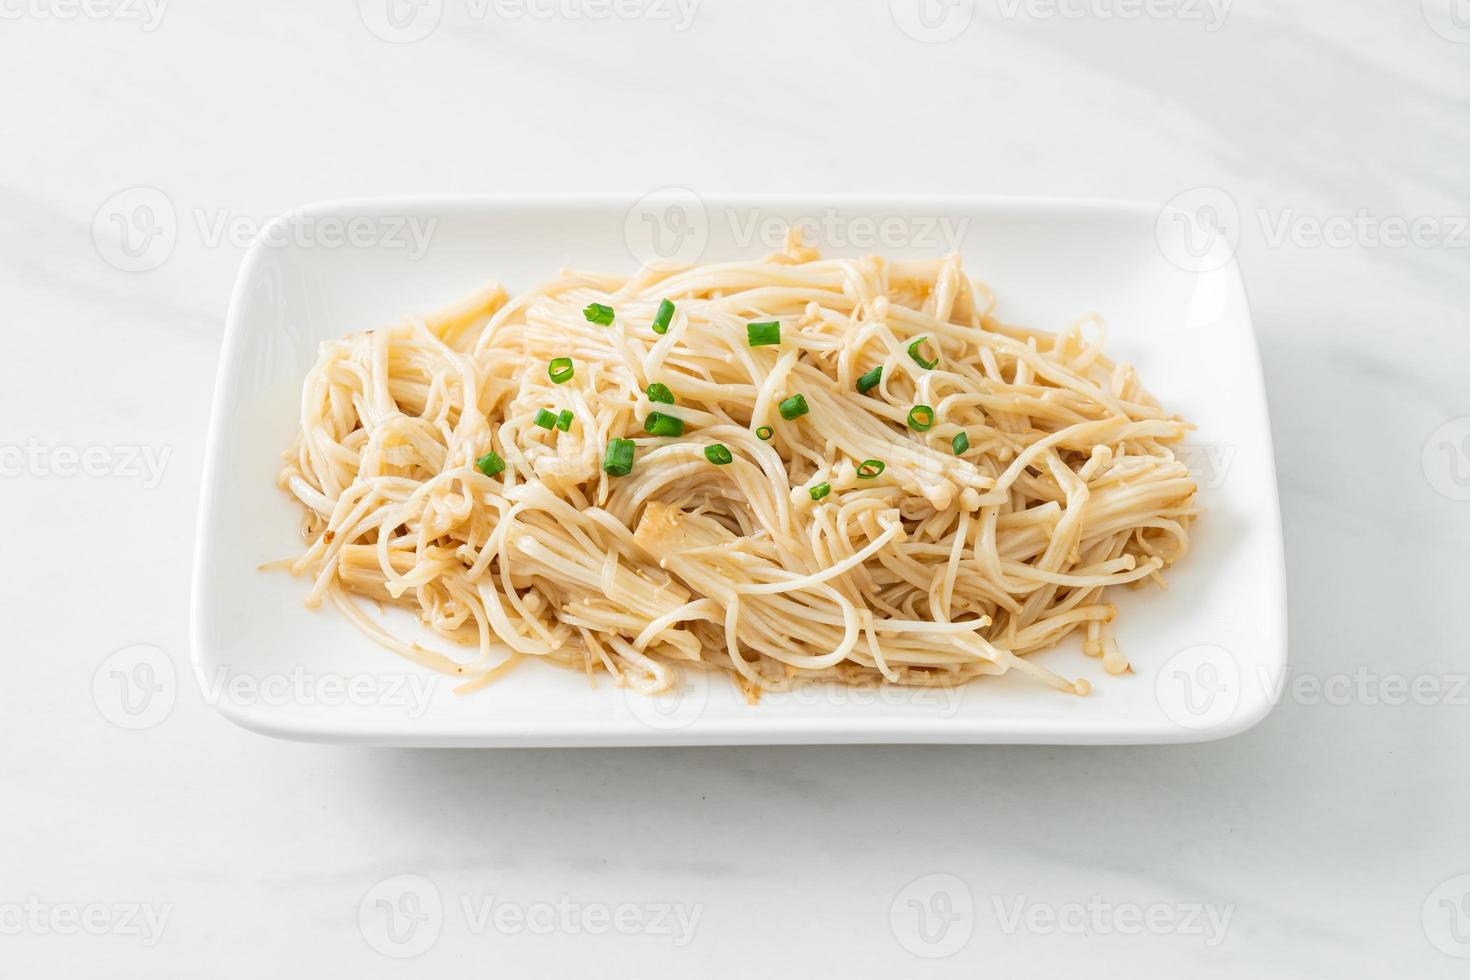 Cogumelo agulha dourado frito com manteiga no prato branco foto